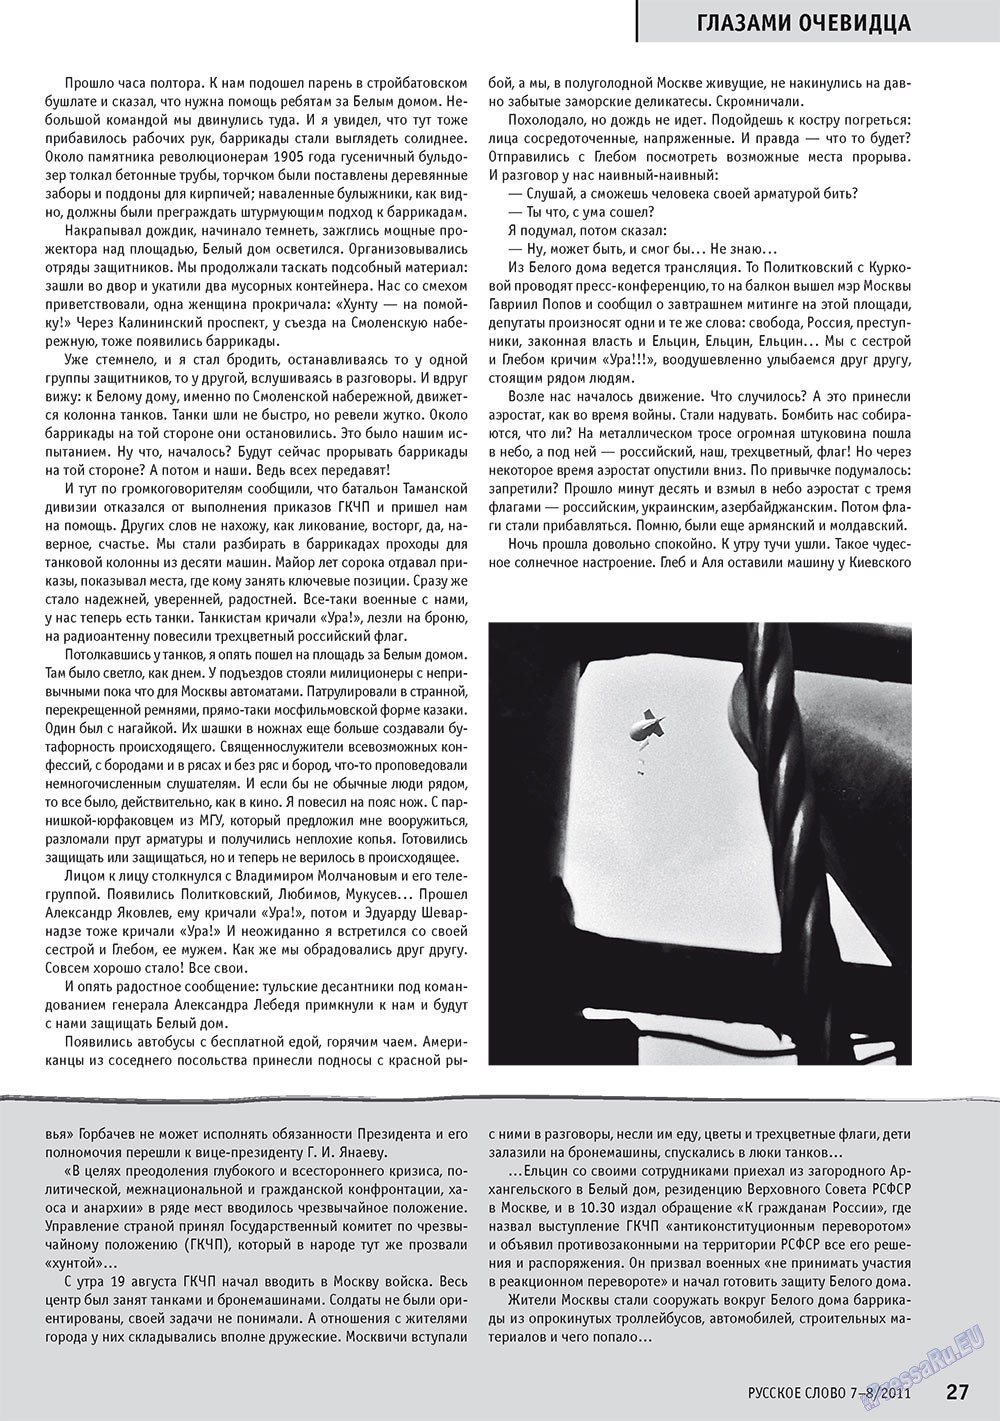 Русское слово, журнал. 2011 №7 стр.29